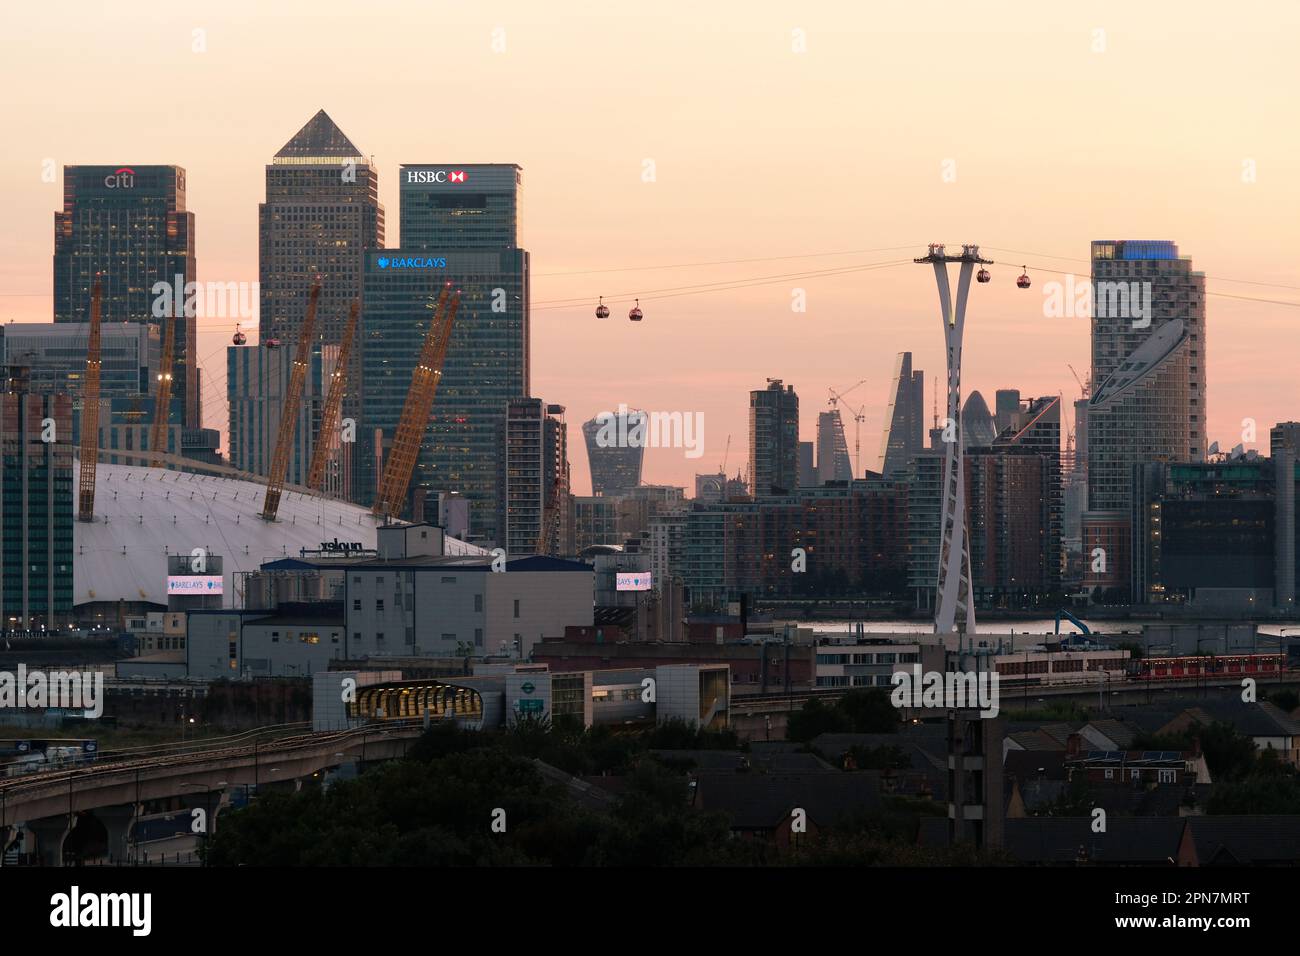 Edifici a Canary Wharf e la città di Londra al tramonto a Londra, Regno Unito, agosto 2017. Fotografo: Bryn Colton Foto Stock